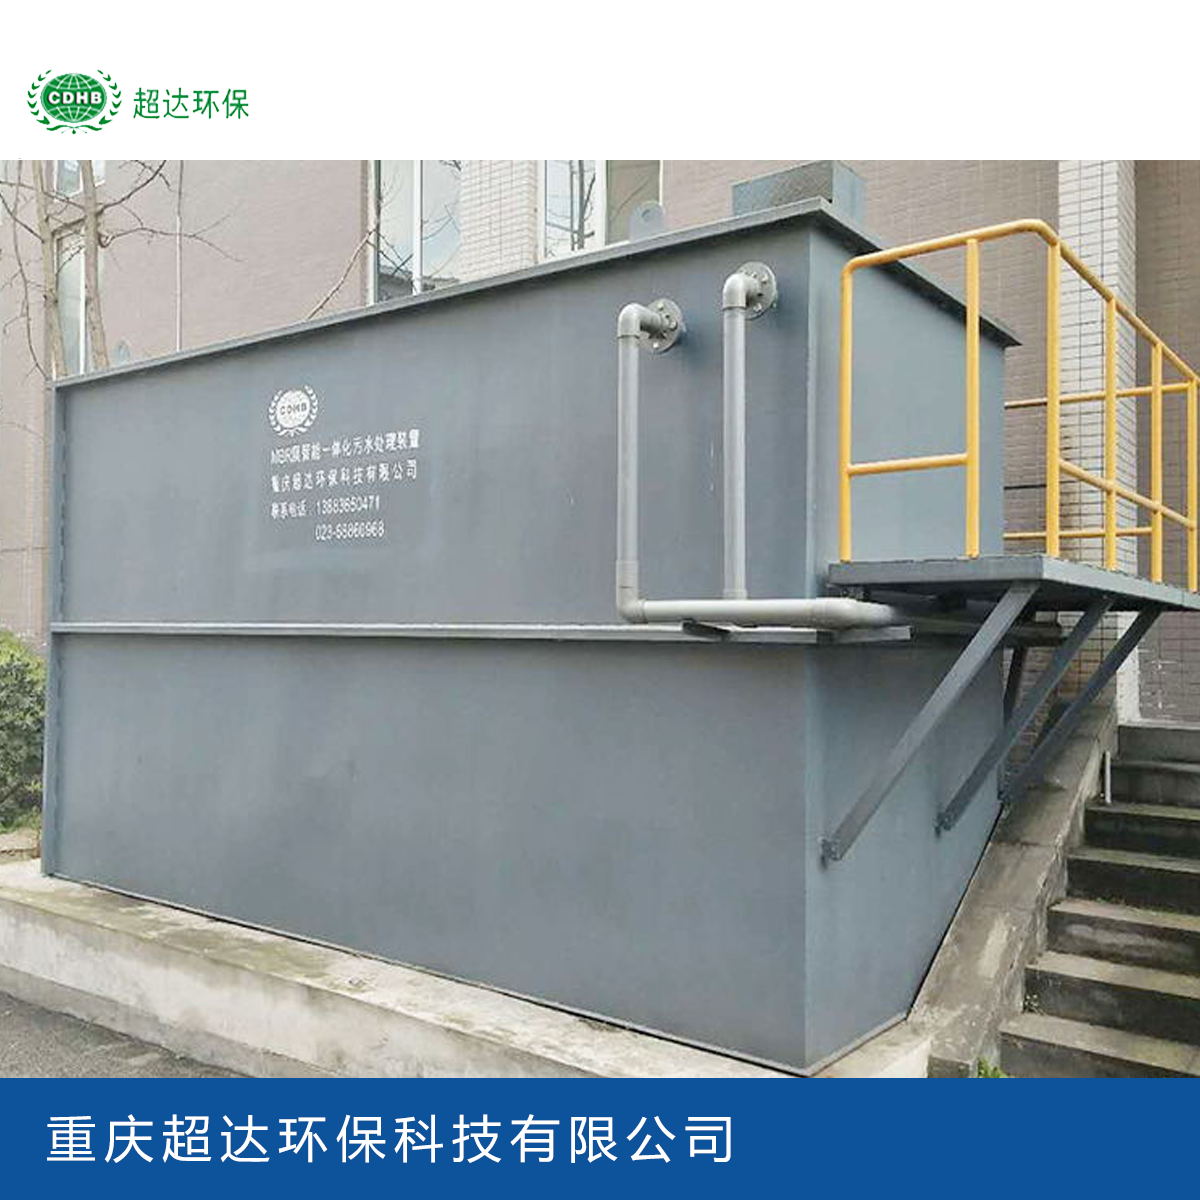 mbr膜污水处理设备 一体化污水处理设备 重庆污水处理厂家